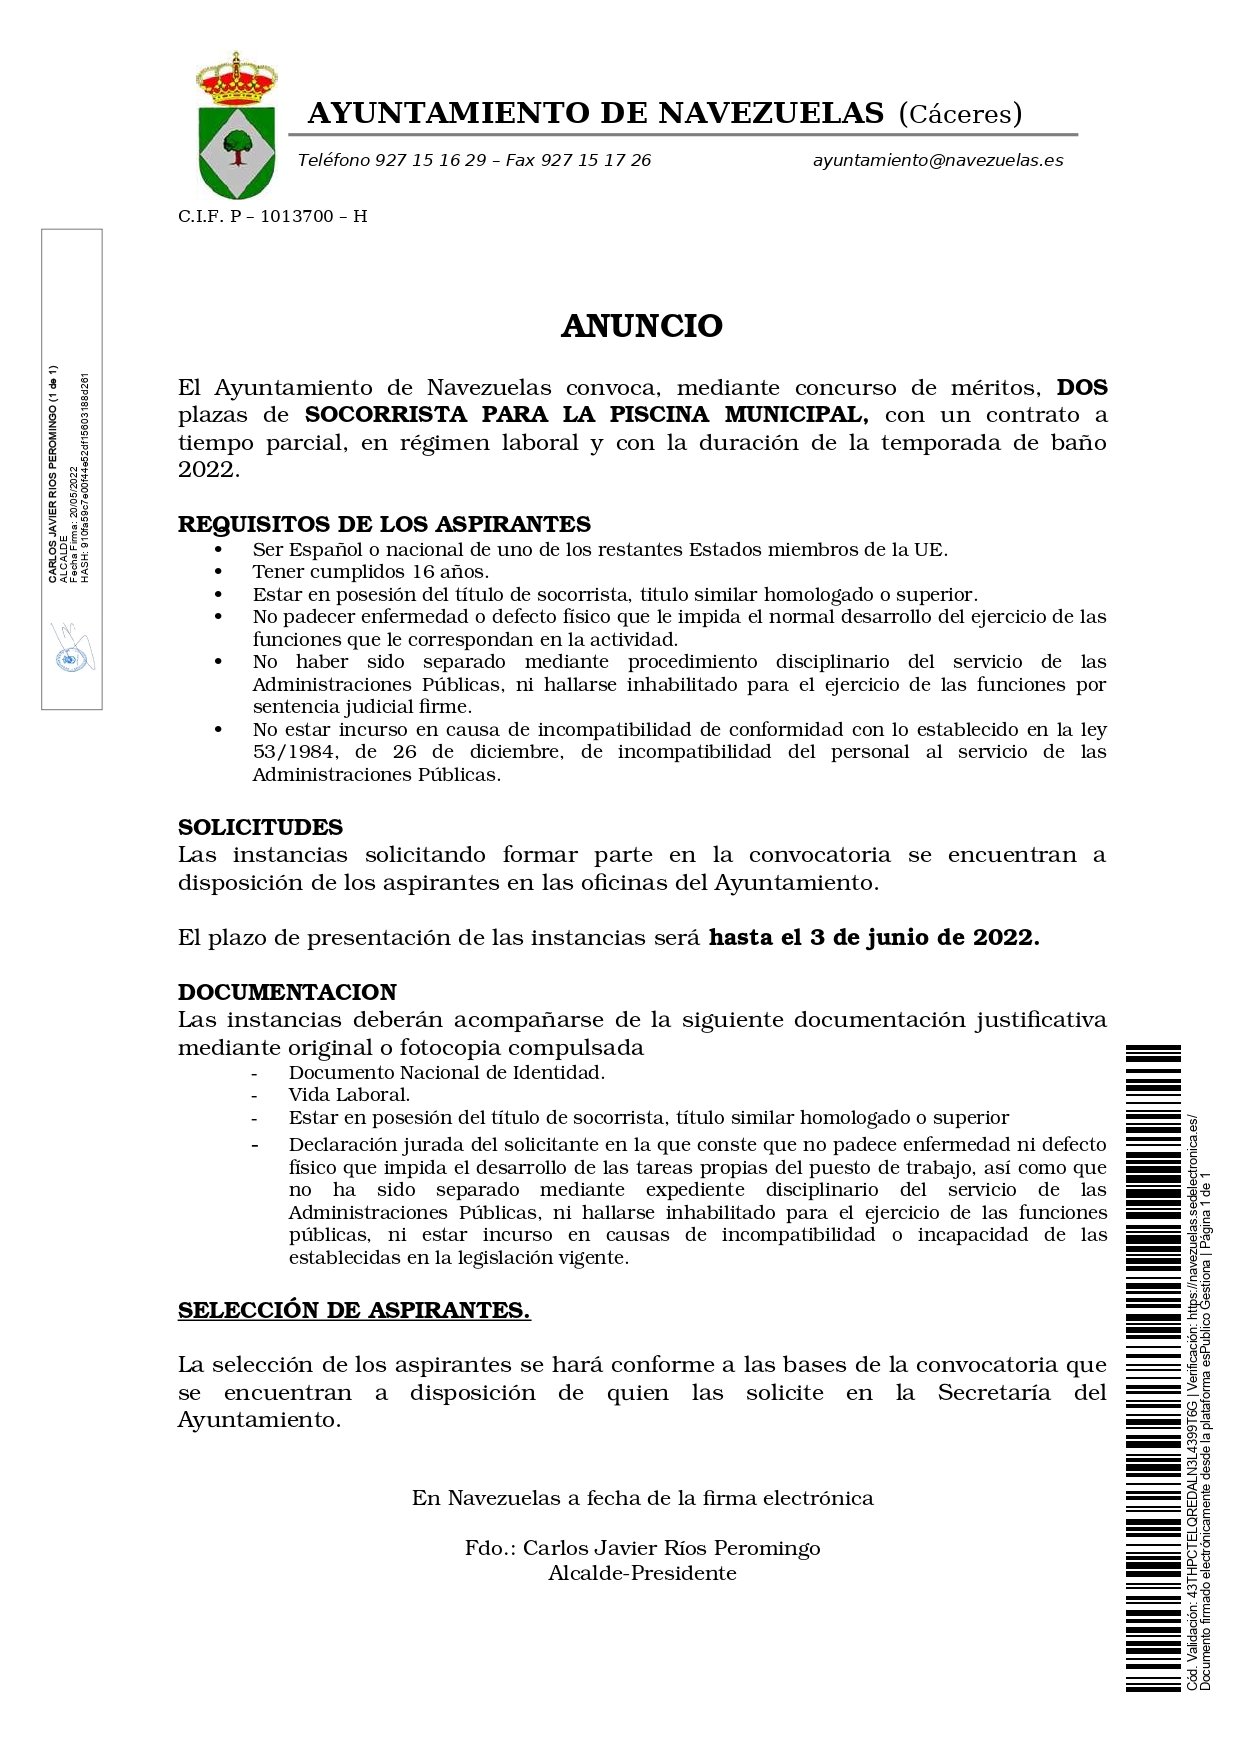 2 socorristas y 1 técnico de dinamización sociocultural (2022) - Navezuelas (Cáceres) 1